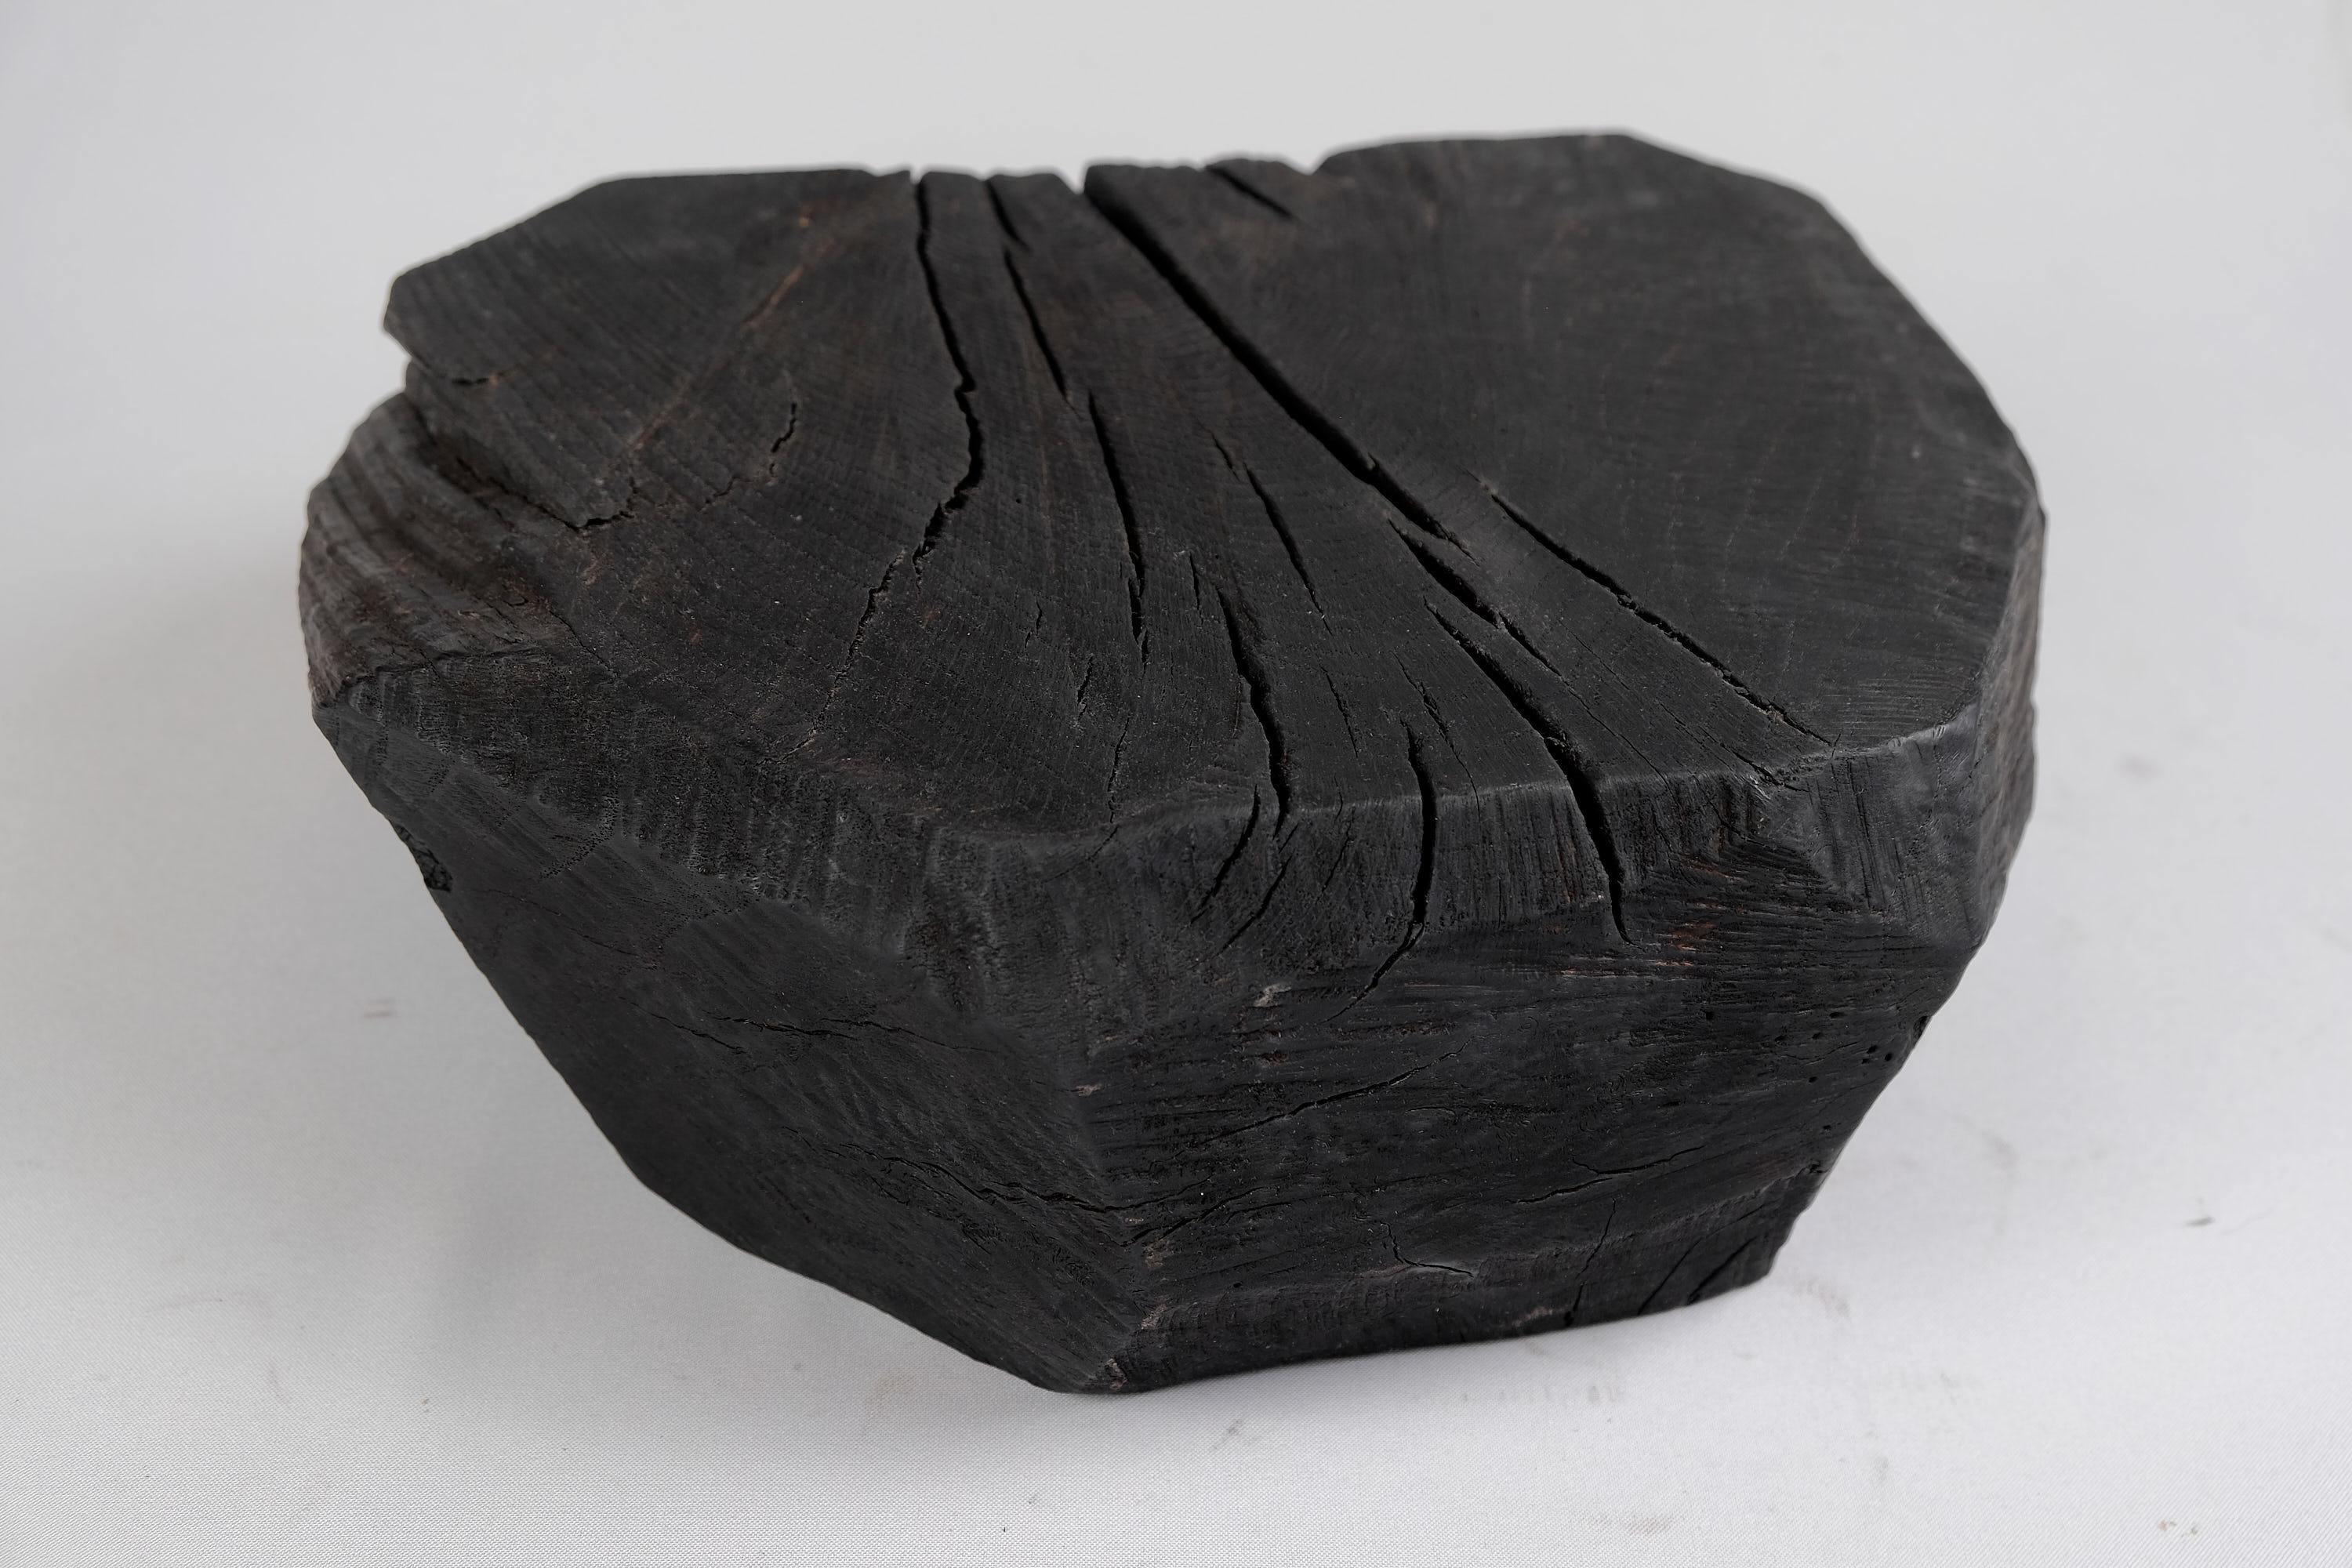 Solid Burnt Wood, Sculptural Stool/Side Table, Rock, Original Design, Logniture For Sale 6